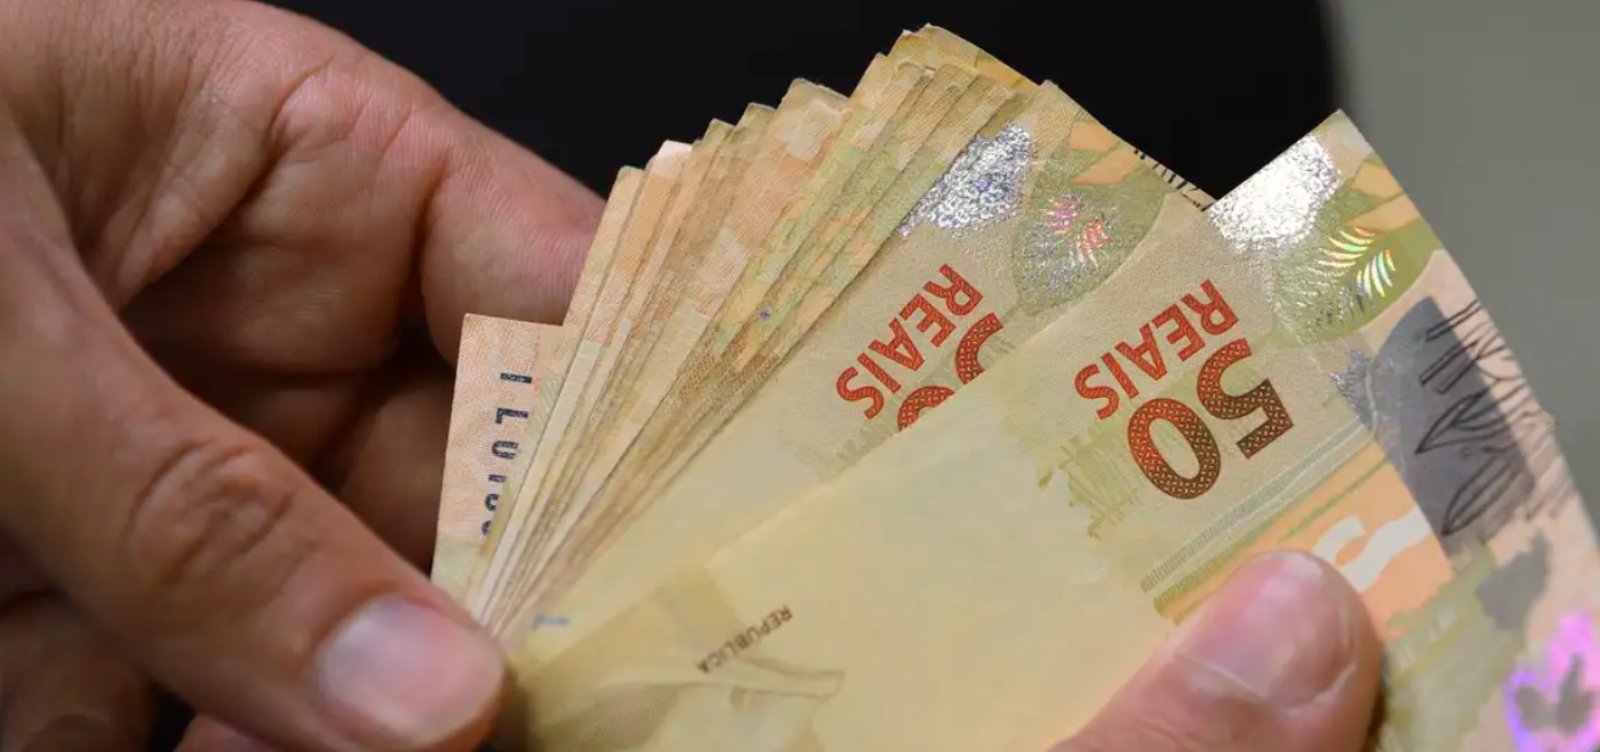 BC indica superávit de R$ 1,2 bilhão nas contas públicas em março